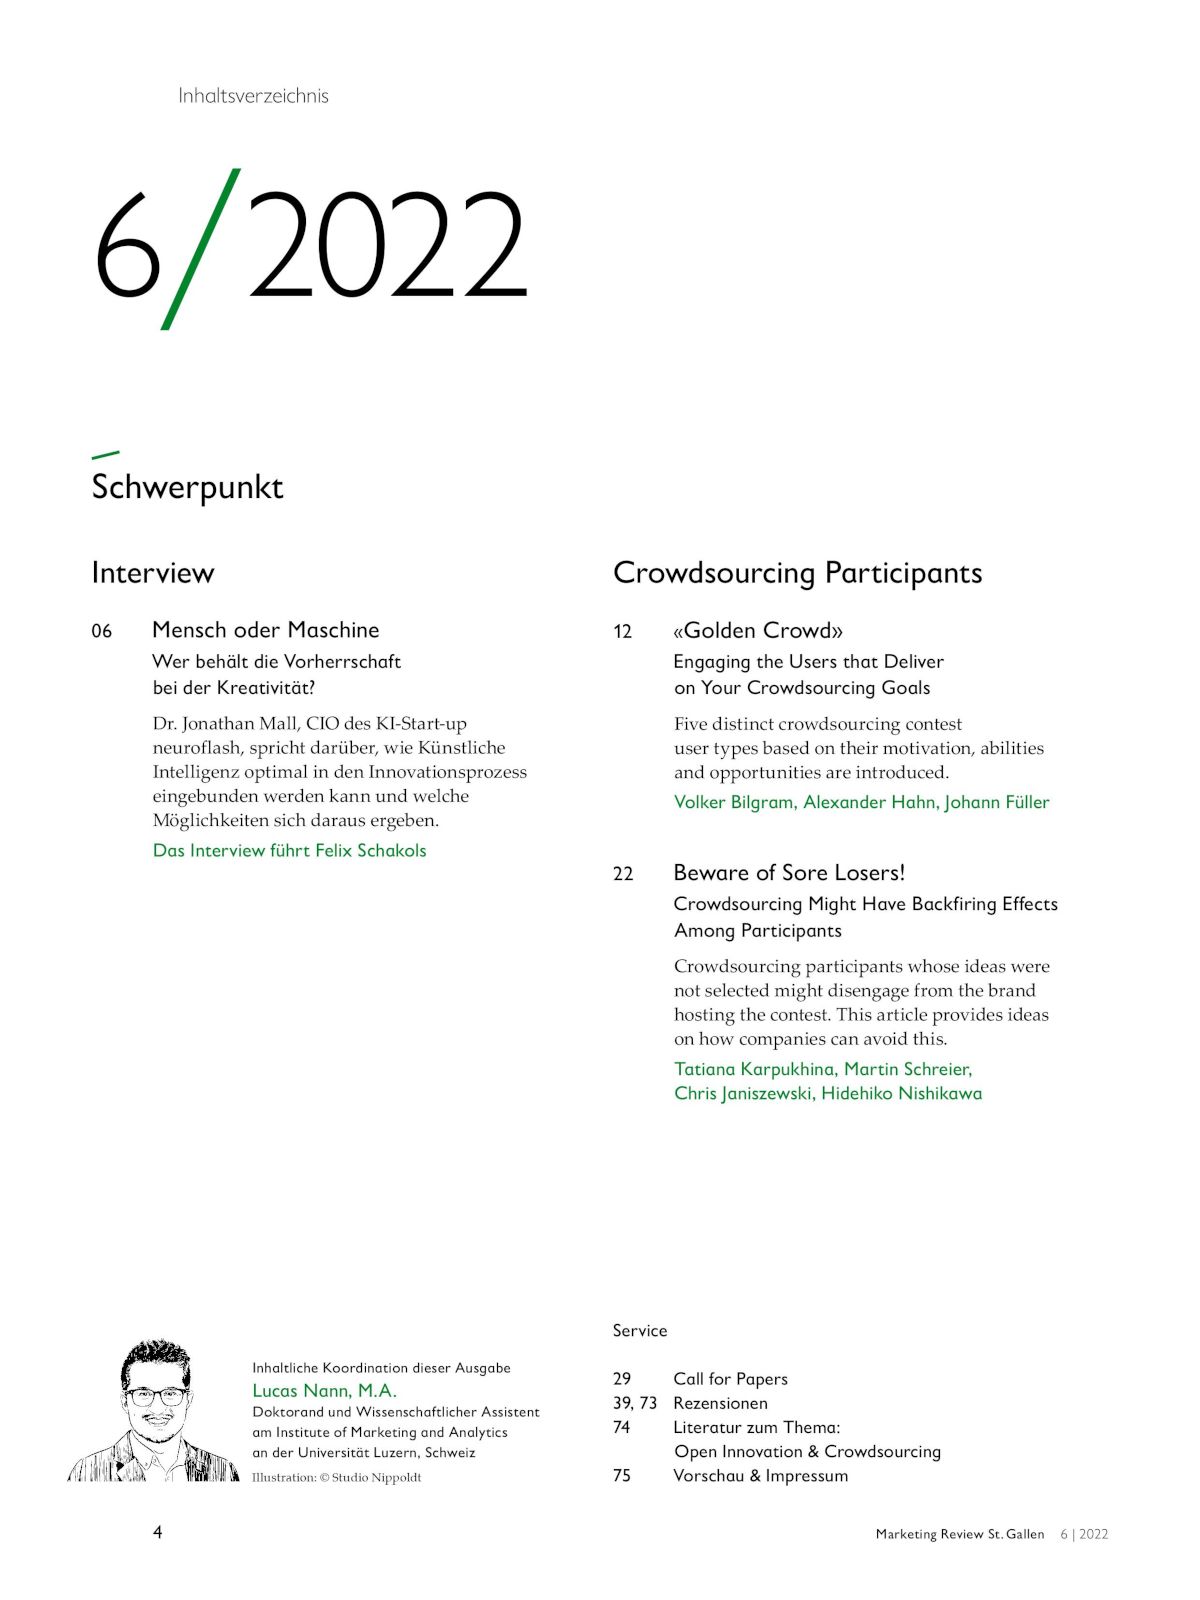 Marketing Review 6-2022 Inhaltsverzeichnis